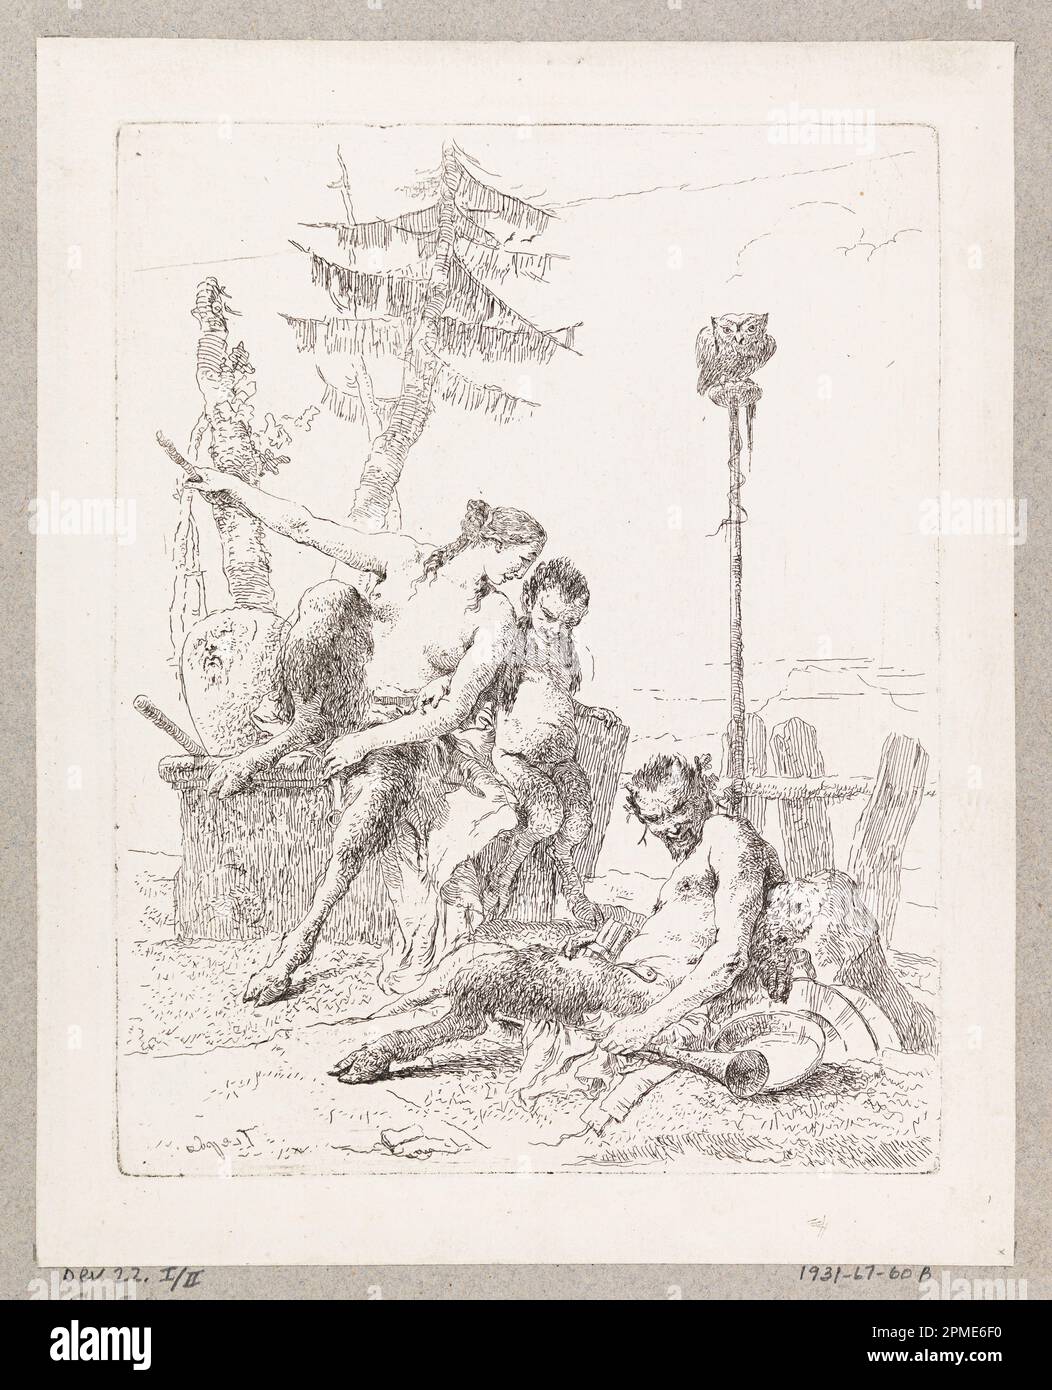 Print, The Satyr and HIS Family, plaque 10 de la Scherzi di Fantasia; conçue par Giovanni Battista Tiepolo (italien, 1692 - 1770); Italie; gravure sur papier à poser; 22,5 x 17,7 cm (8 7/8 x 6 15/16 po); 1931-67-60-2 Banque D'Images